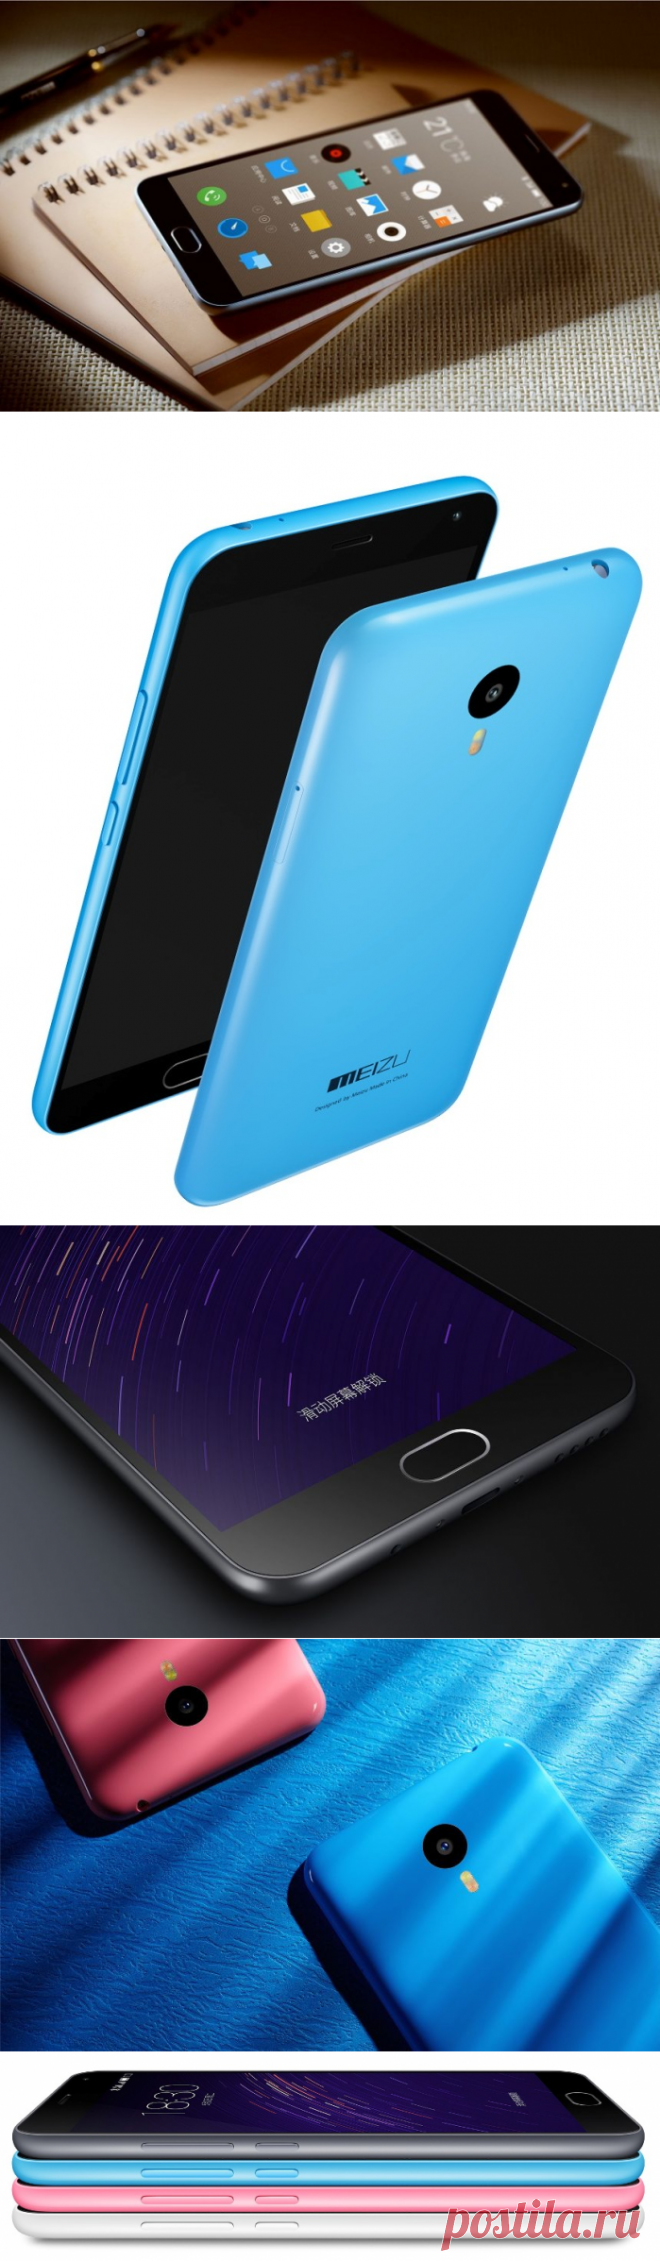 Сегодня китайская компания Meizu представила новый смартфон M2 Note